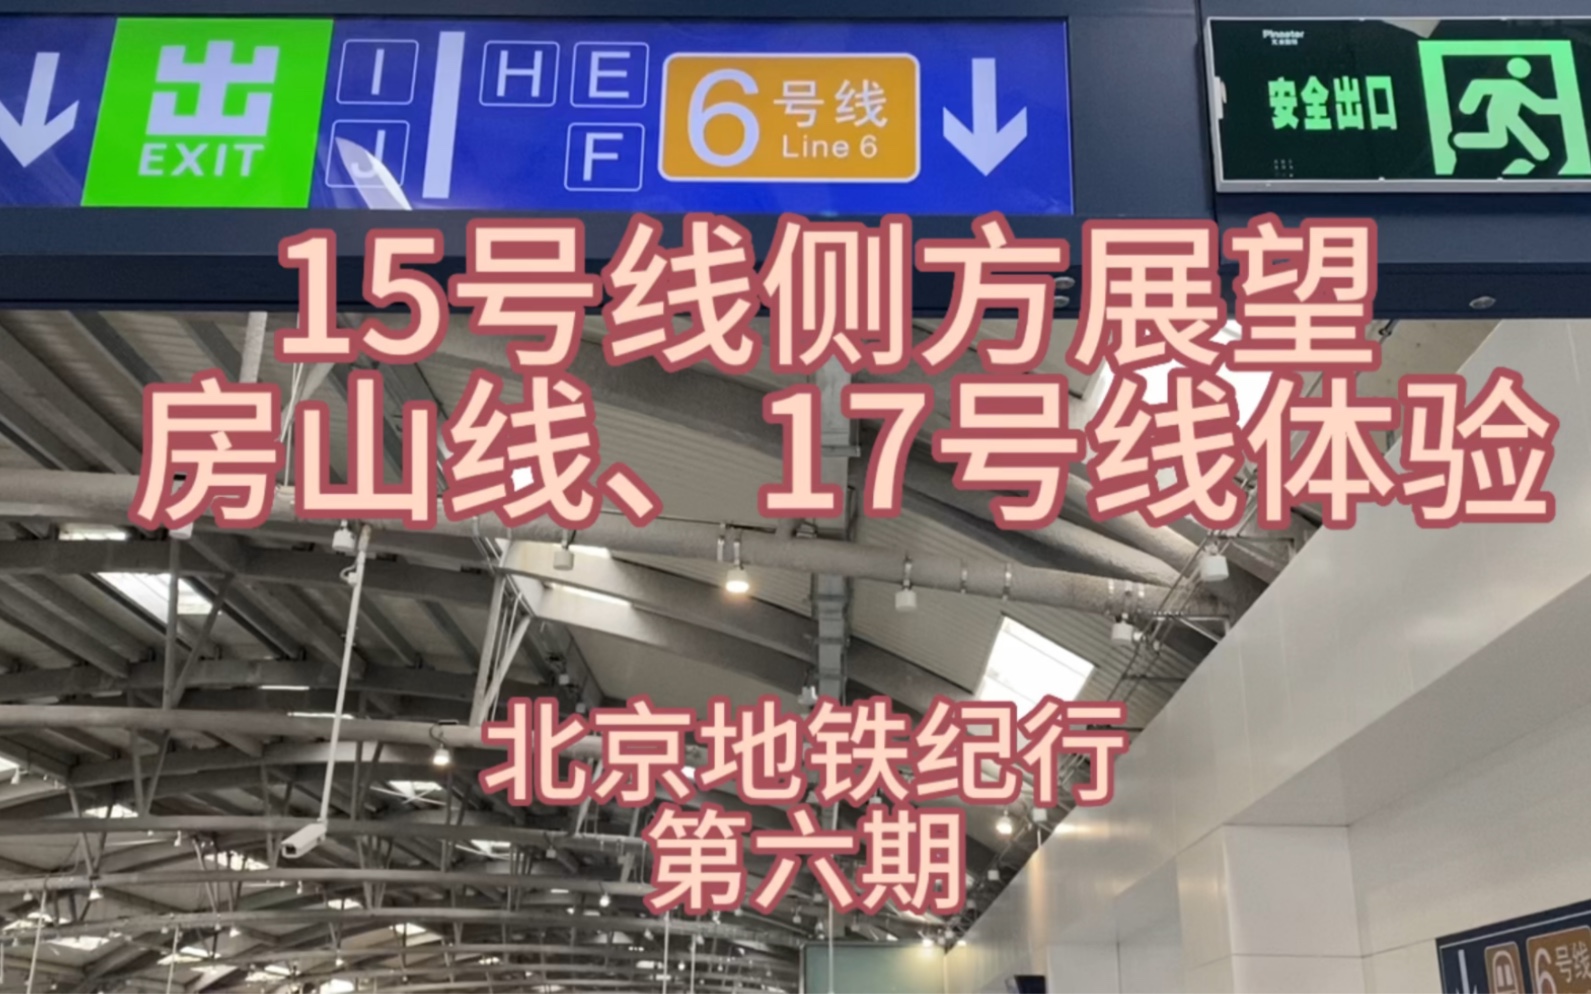 15号线地上段侧方展望,房山线,17号线体验 北京地铁纪行(第六期)